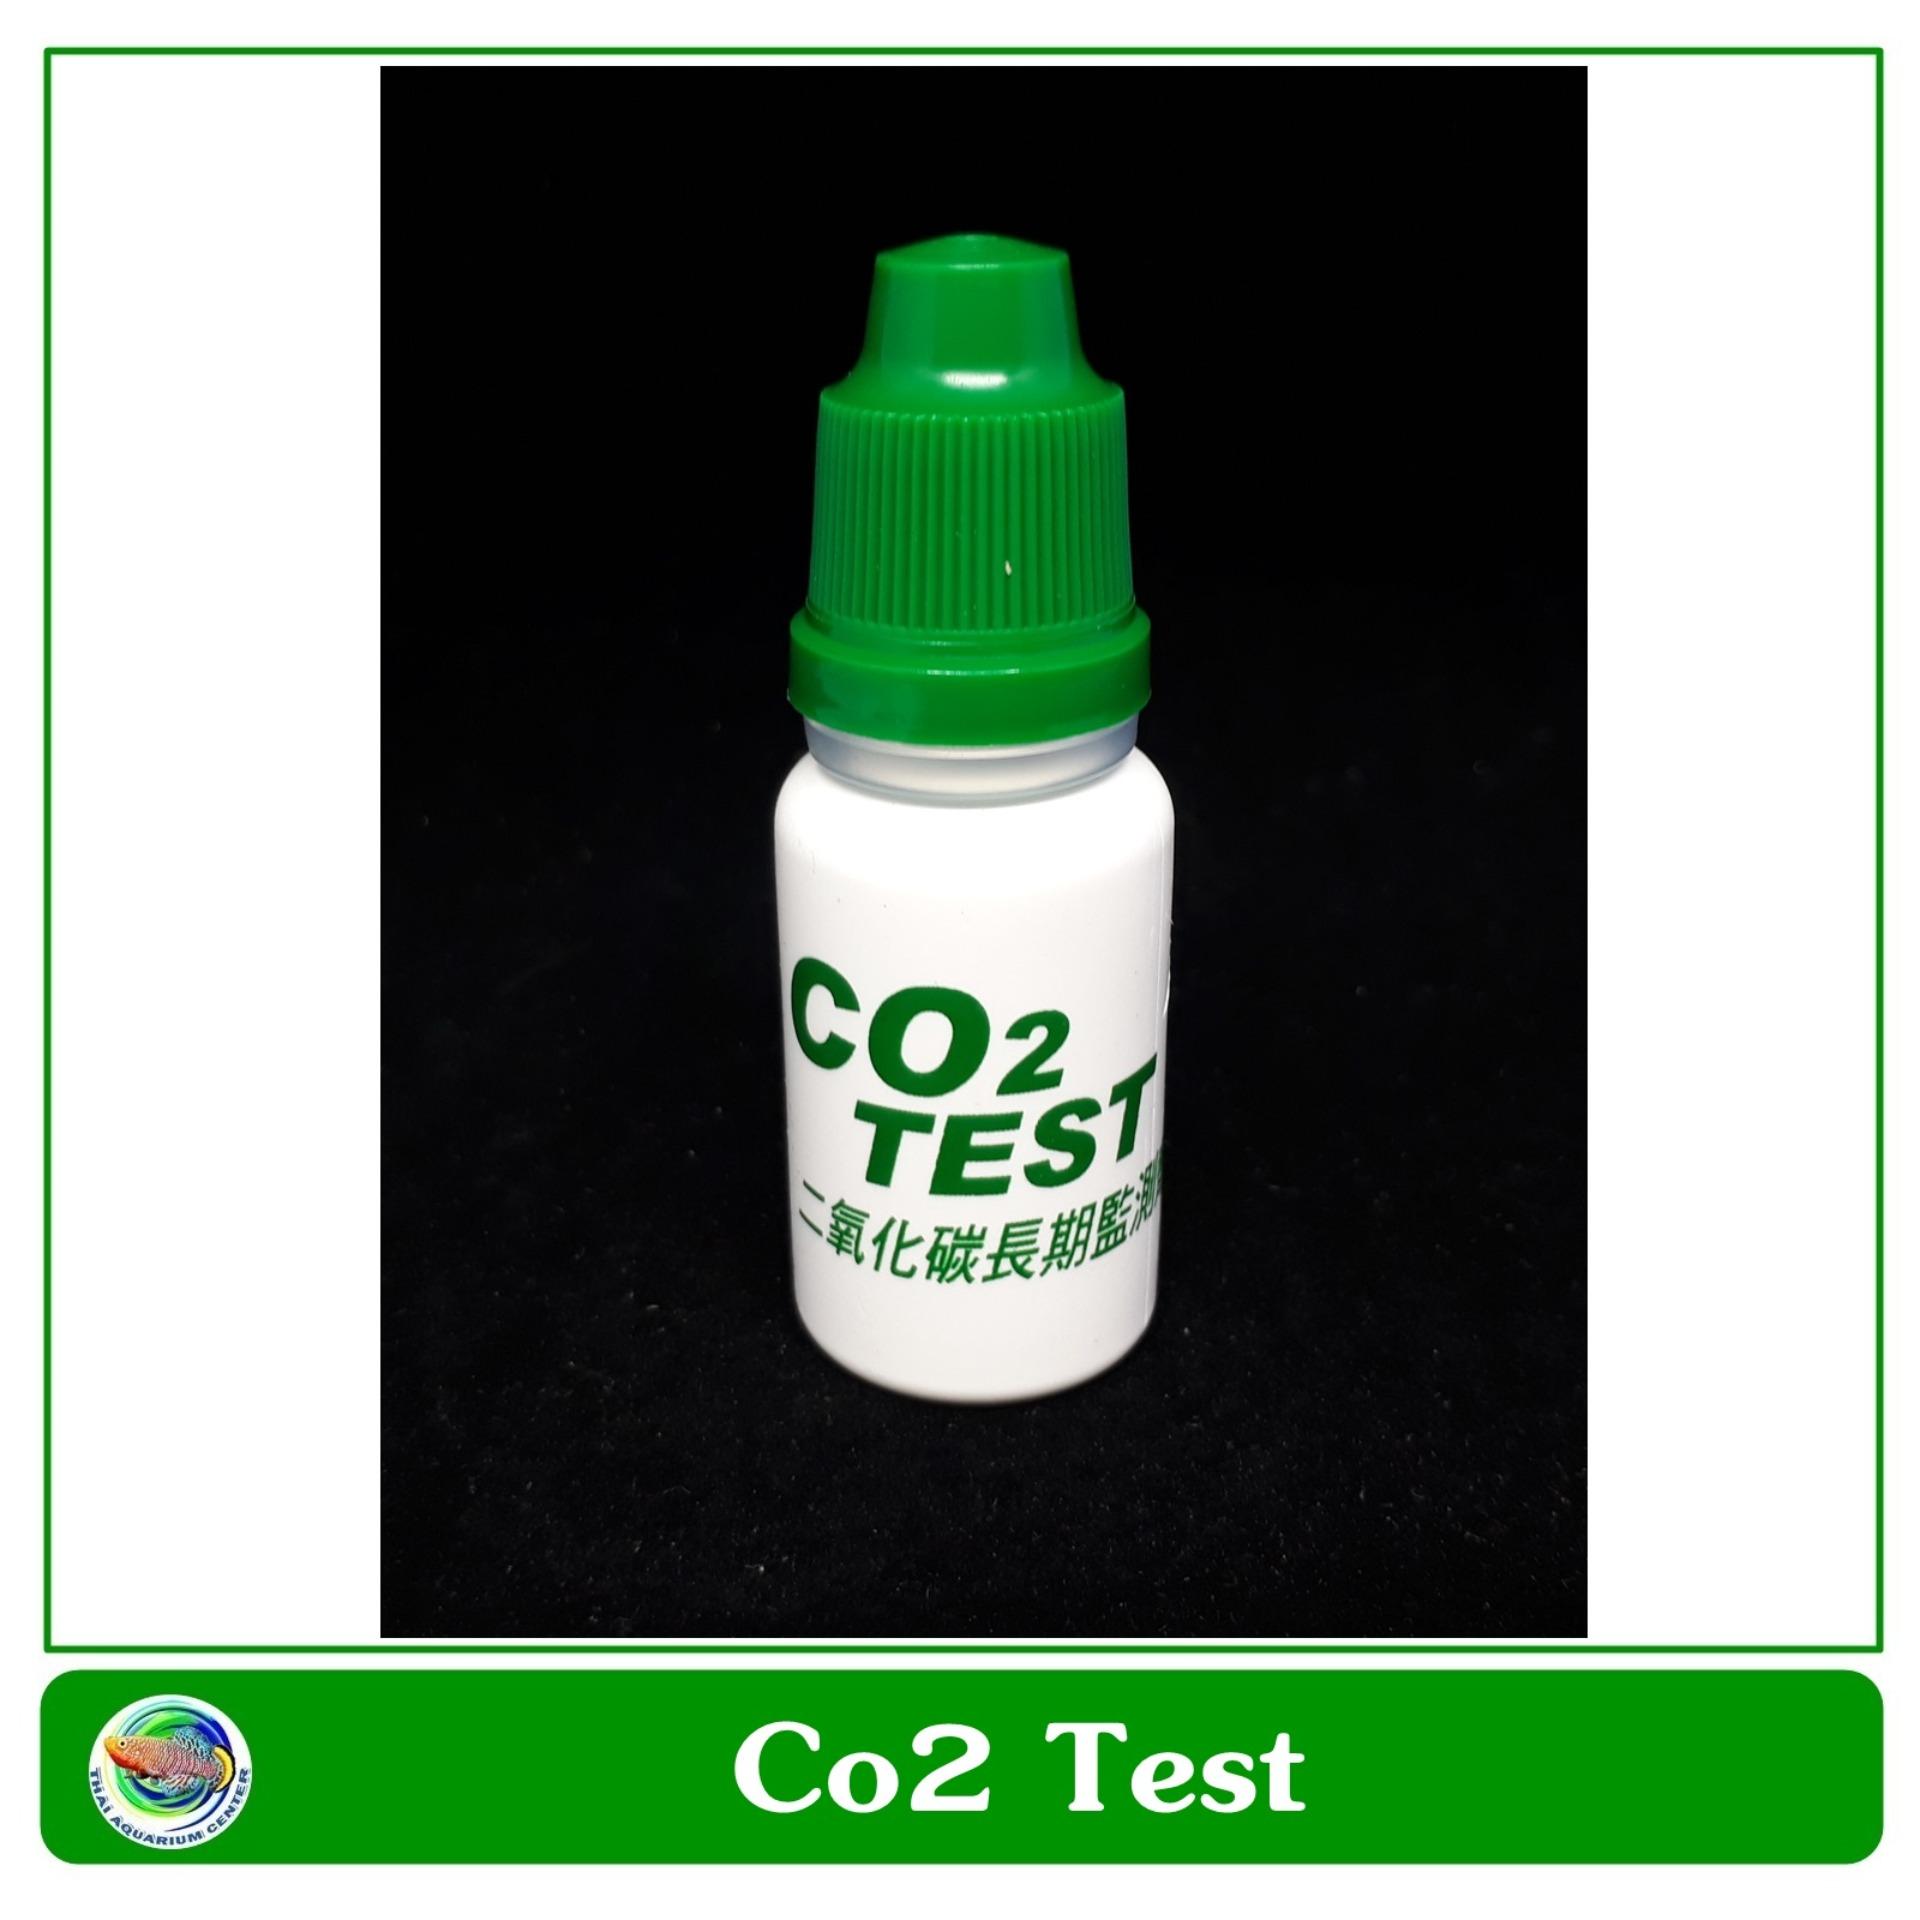 น้ำยาทดสอบระดับคาร์บอนไดออกไซด์ Co2 และค่า pH สำหรับตู้ปลาและตู้ไม้น้ำ Aquatic CO2 test solution